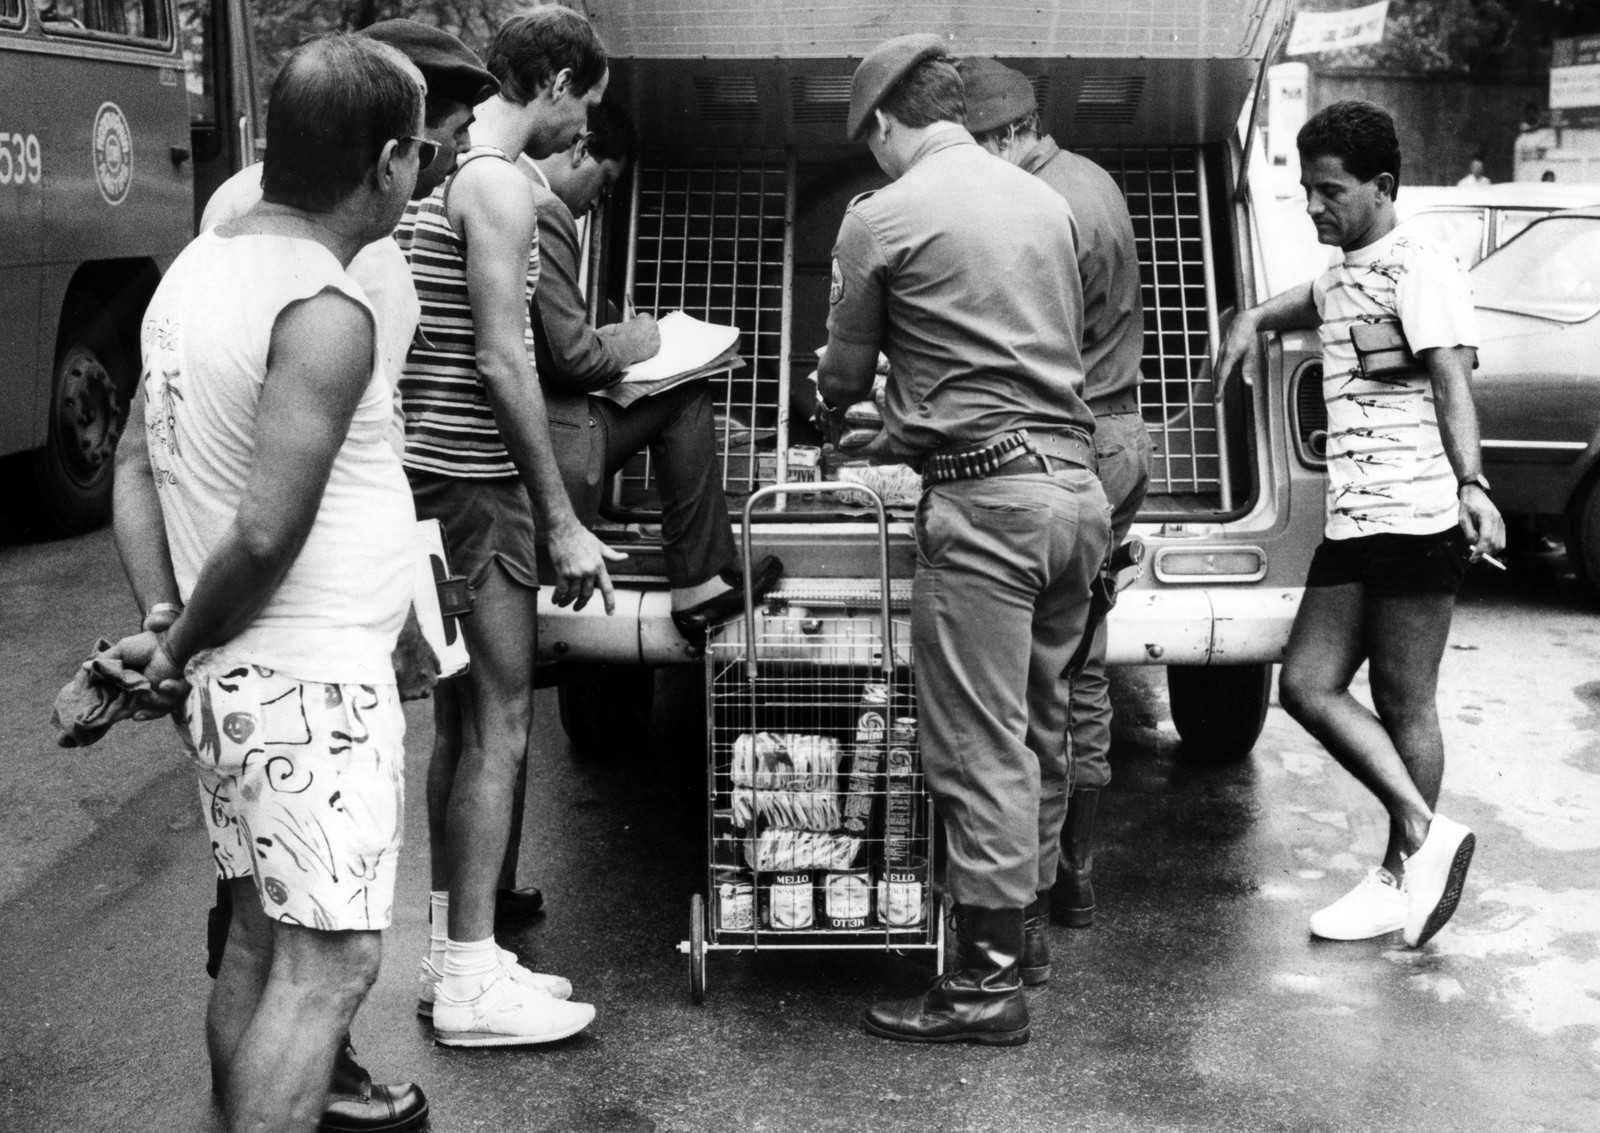 Em Vila Isabel, um camburão chamado por clientes de um supermercado, leva produtos com preços alterados e causam autuação — Foto: José Doval / Agência O Globo